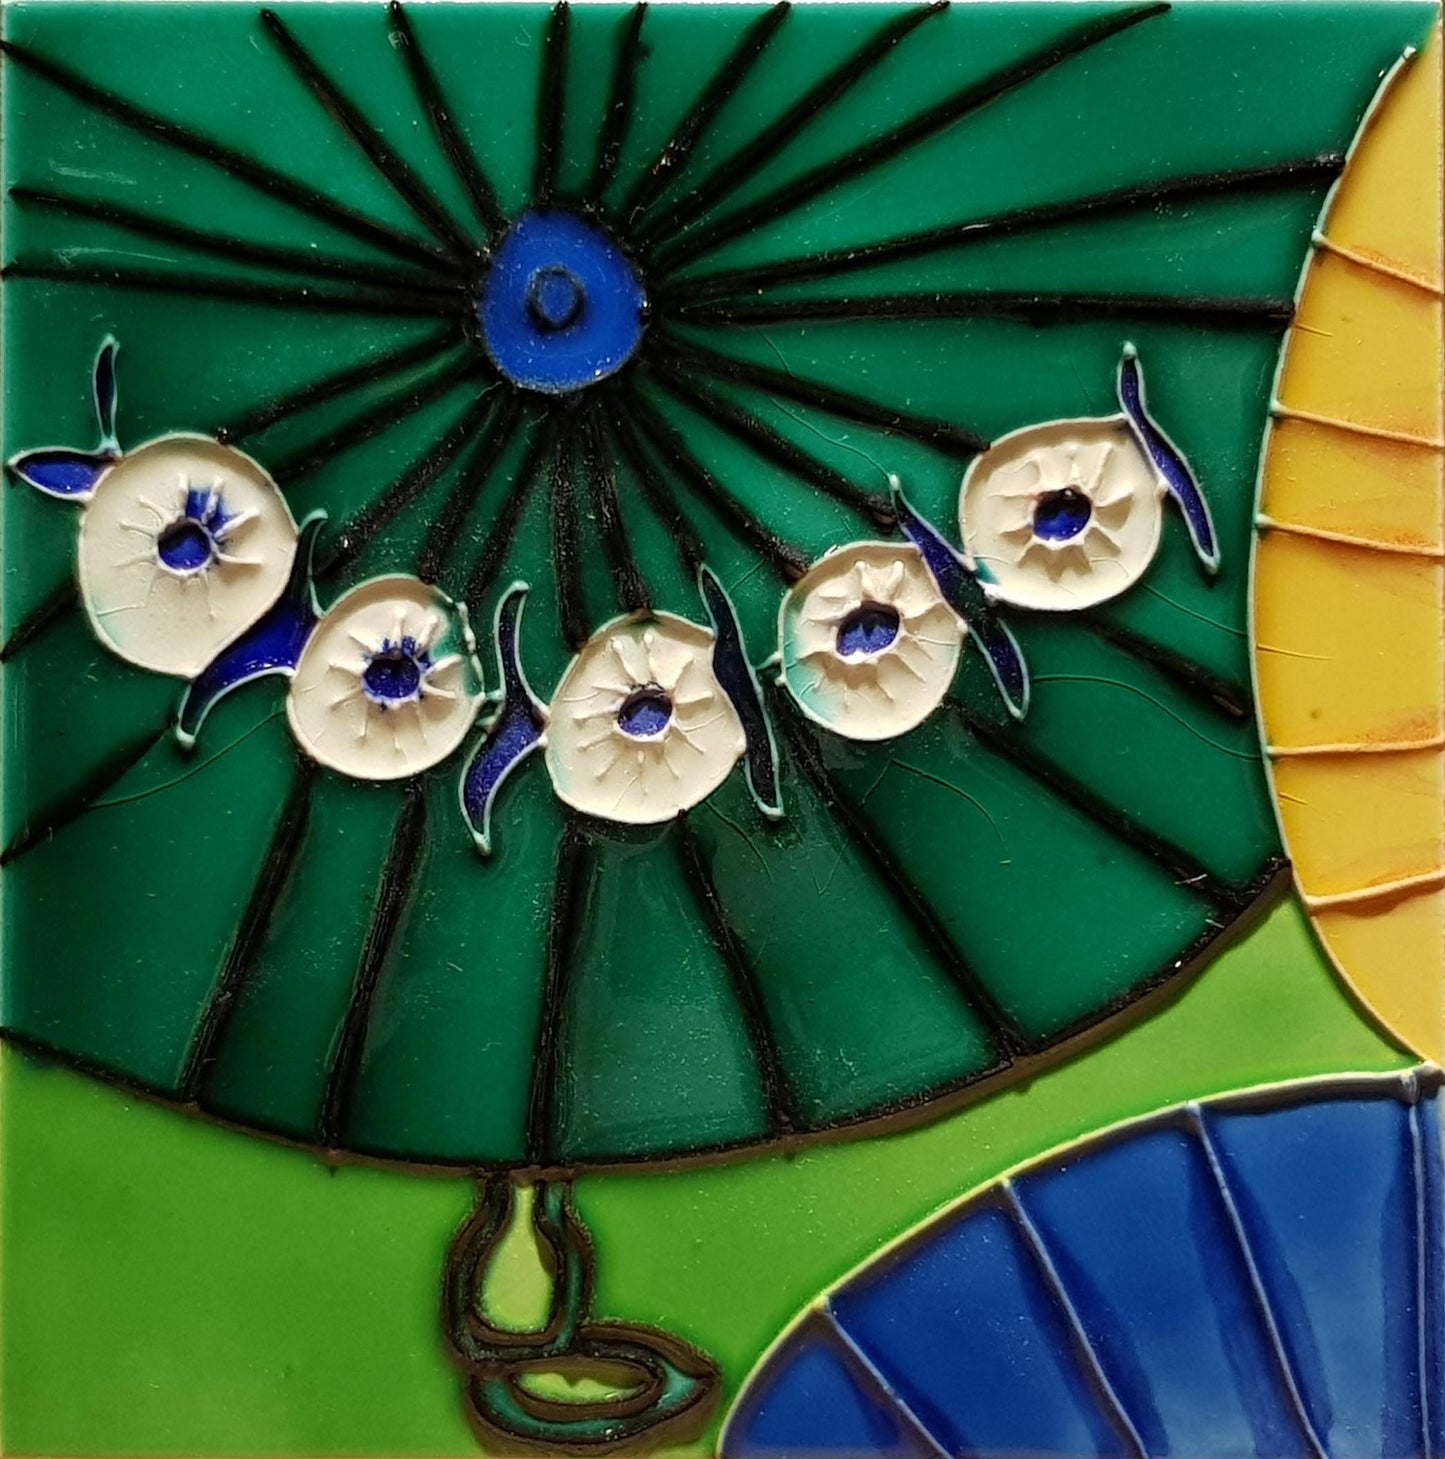 2129 Green Umbrella 20cm x 20cm Pureland Ceramic Tile